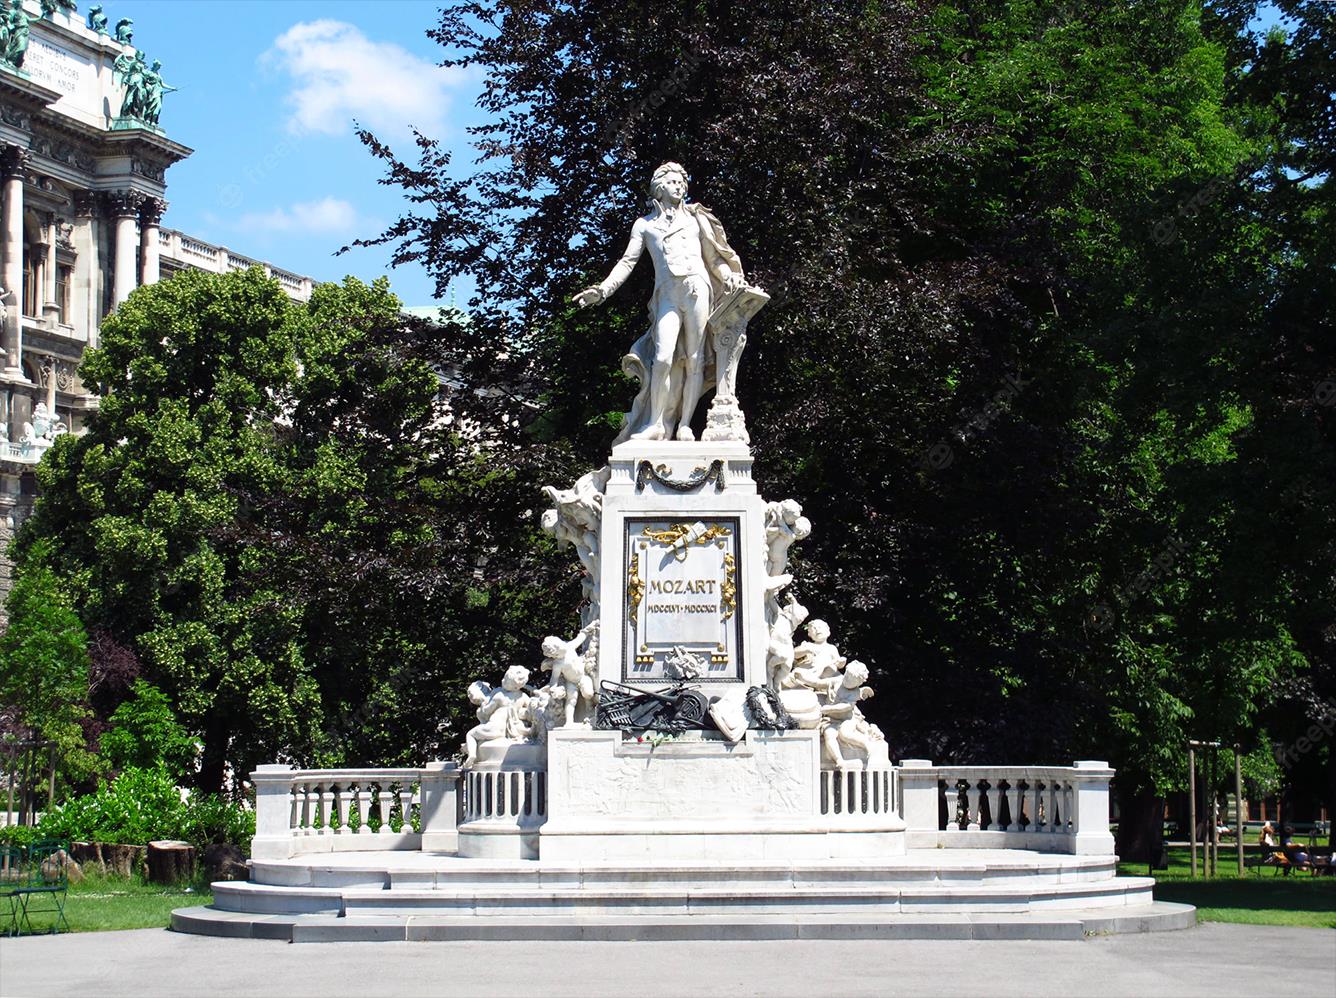 Du lịch Áo và nhìn qua tượng Mozart